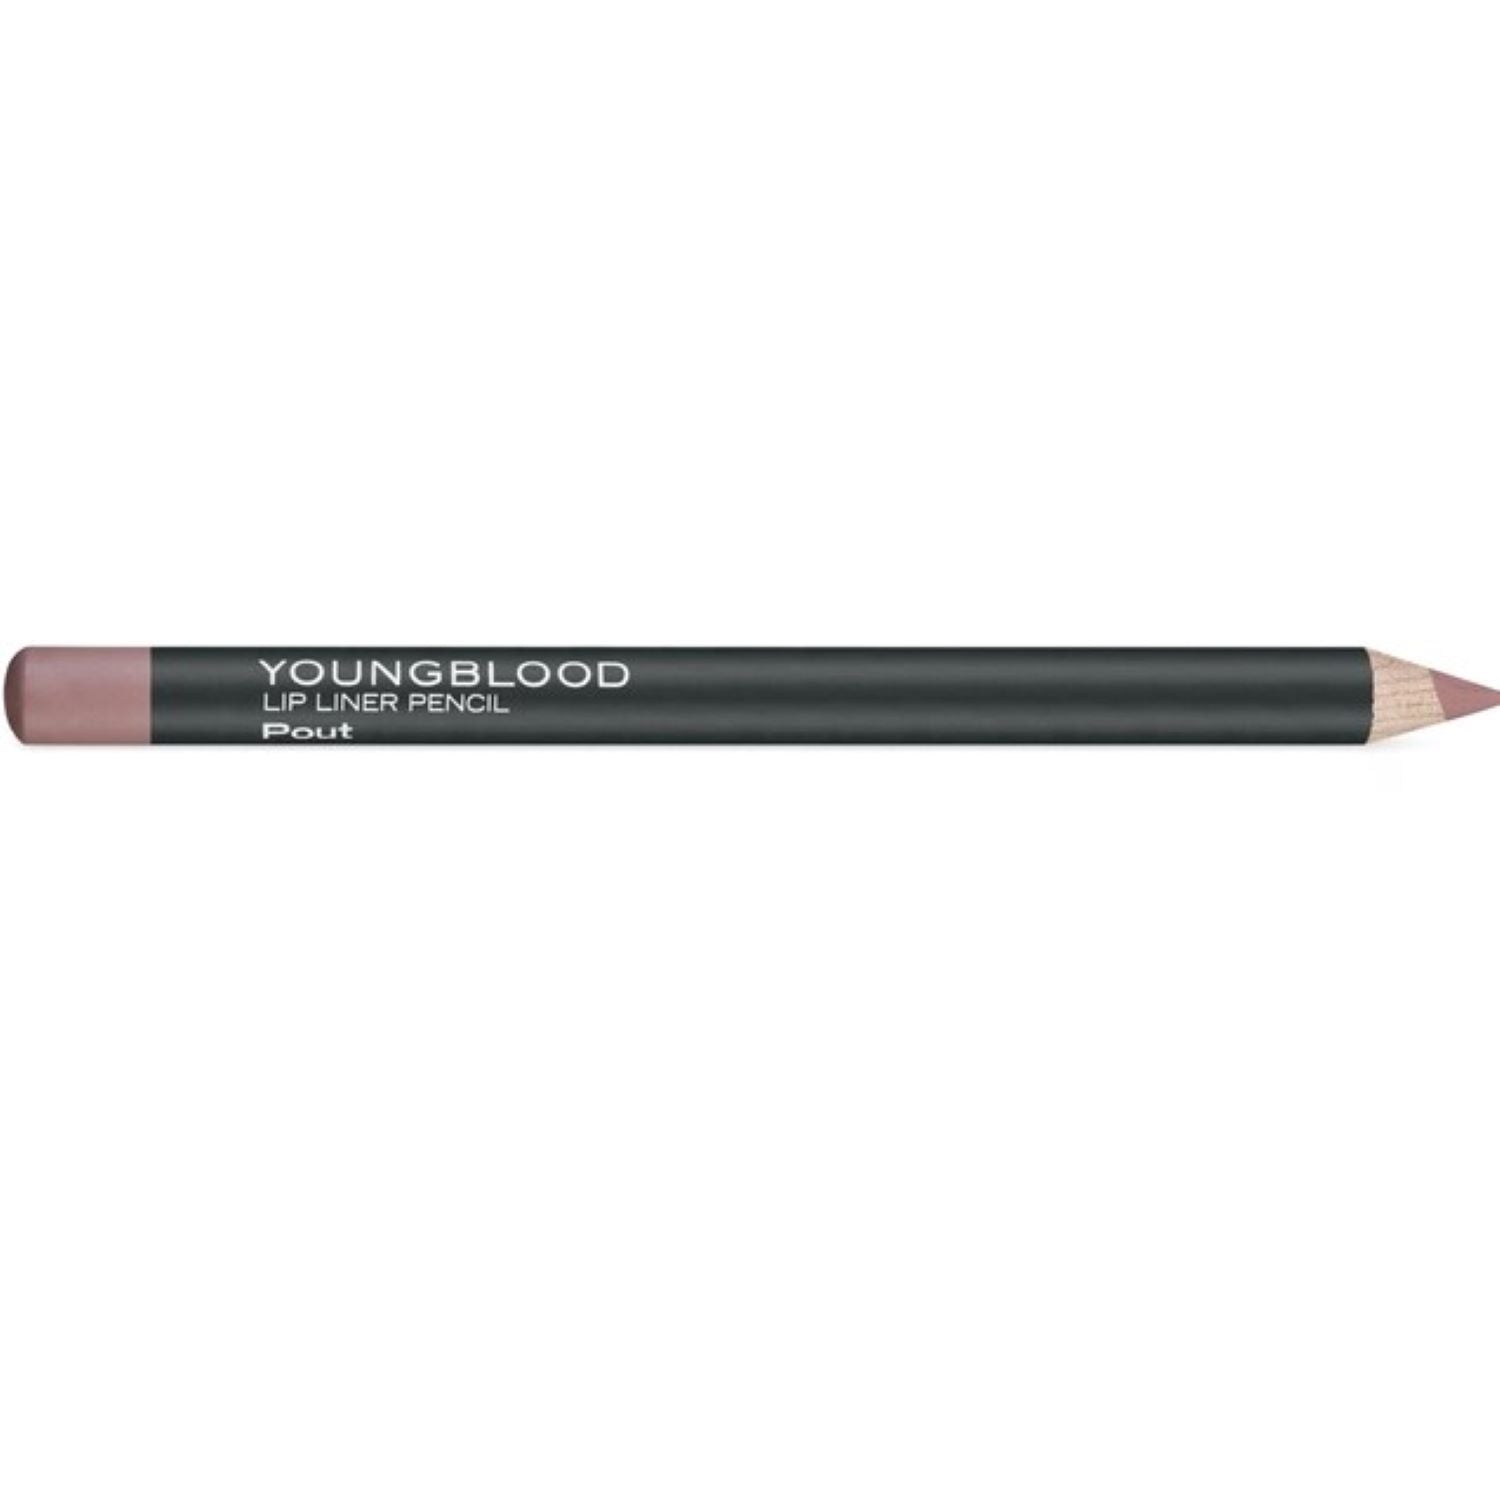 Youngblood Lip Liner Pencil / POUT